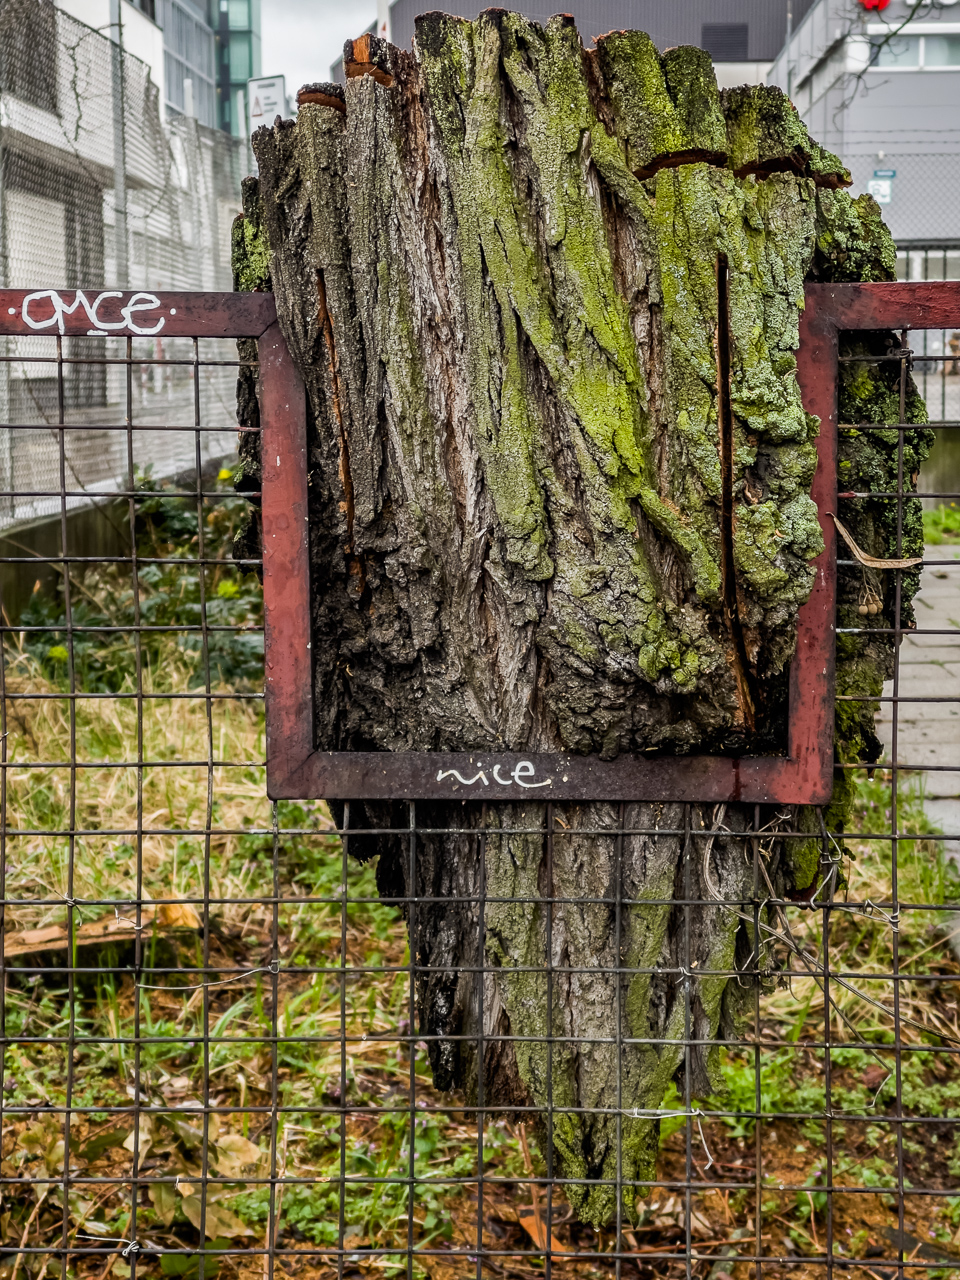 Ein rostiger roter Zaun hat eine Aussparung für einen Baum, der dahinter gestanden hat, seither aber gefällt worden ist. Nur noch ein großes Stück Rinde hängt in der Aussparung